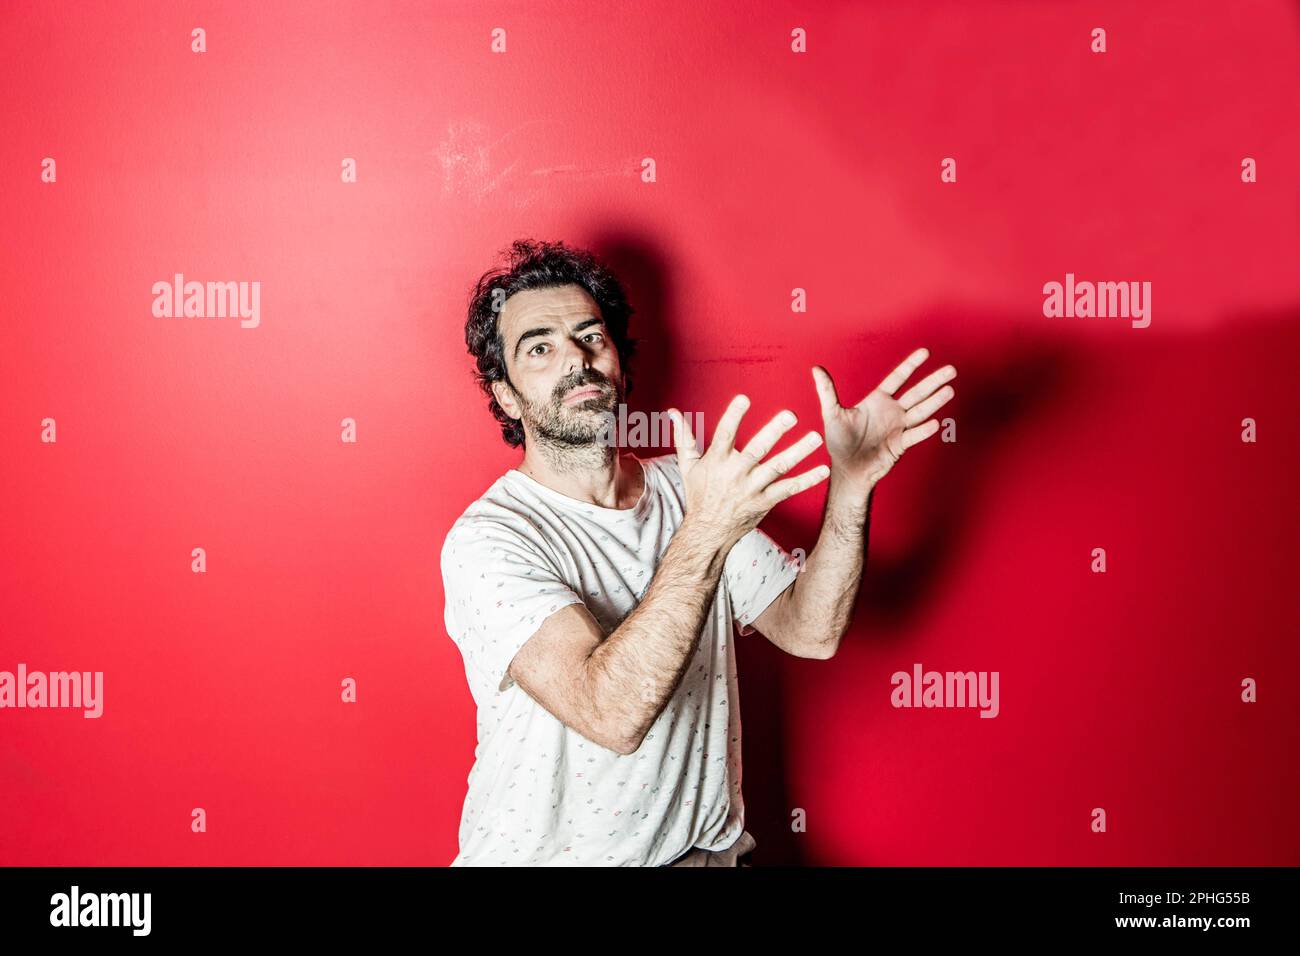 David Selvas, actor y director de teatro. Barcelona, fotografía del año 2018. Stock Photo